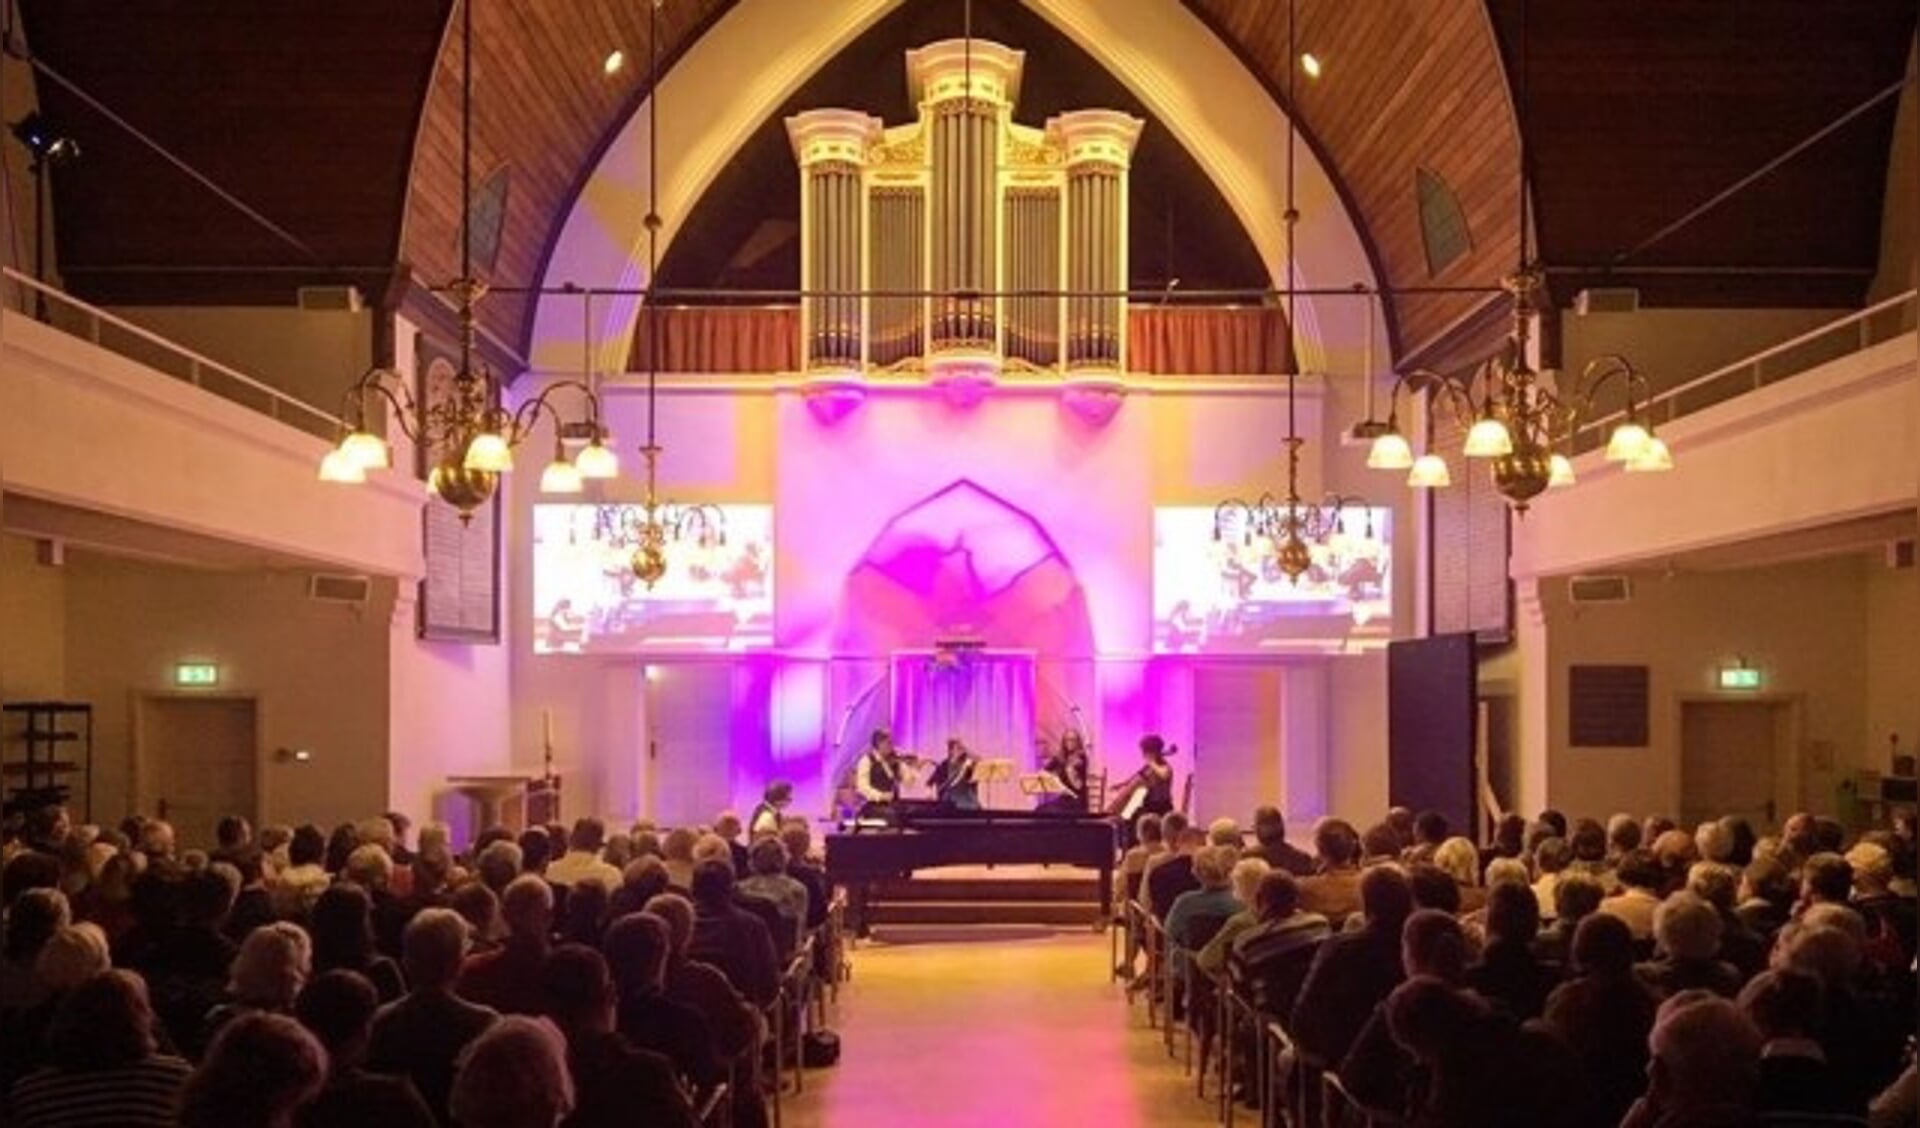 De uitvoering vond plaats in de Grote Kerk in Driebergen. FOTO: Willem den Boer